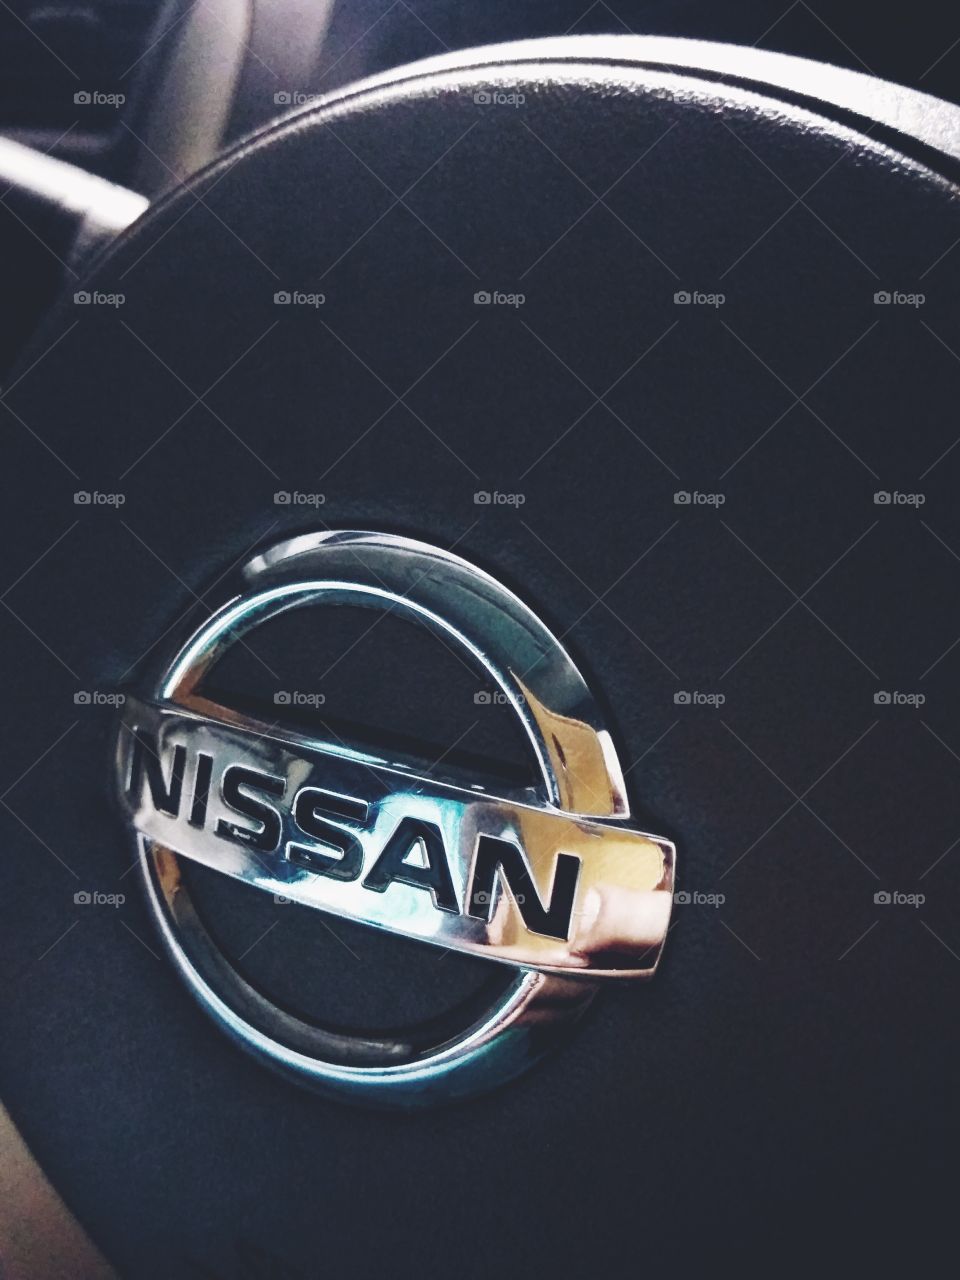 Nissan steer